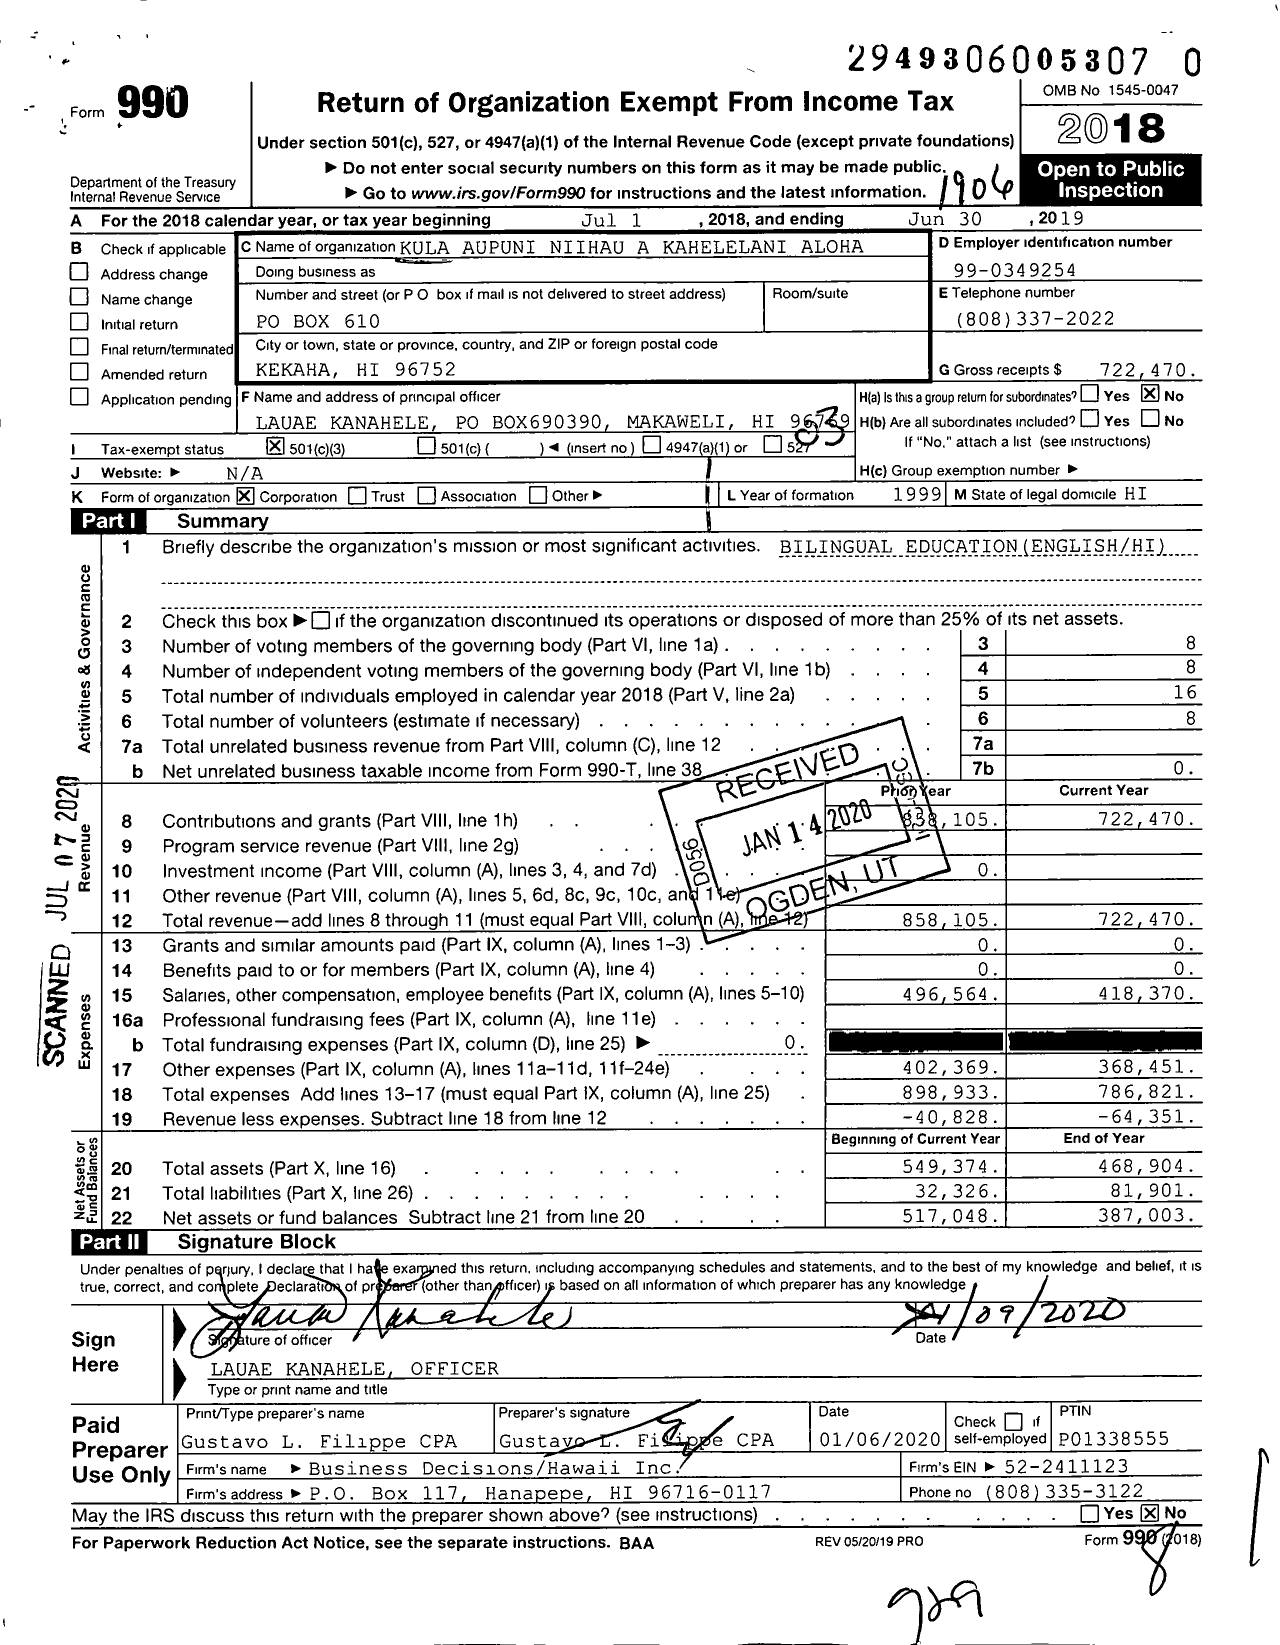 Image of first page of 2018 Form 990 for Kula Aupuni Niihau A Kahelelani Aloha (KANAKA)